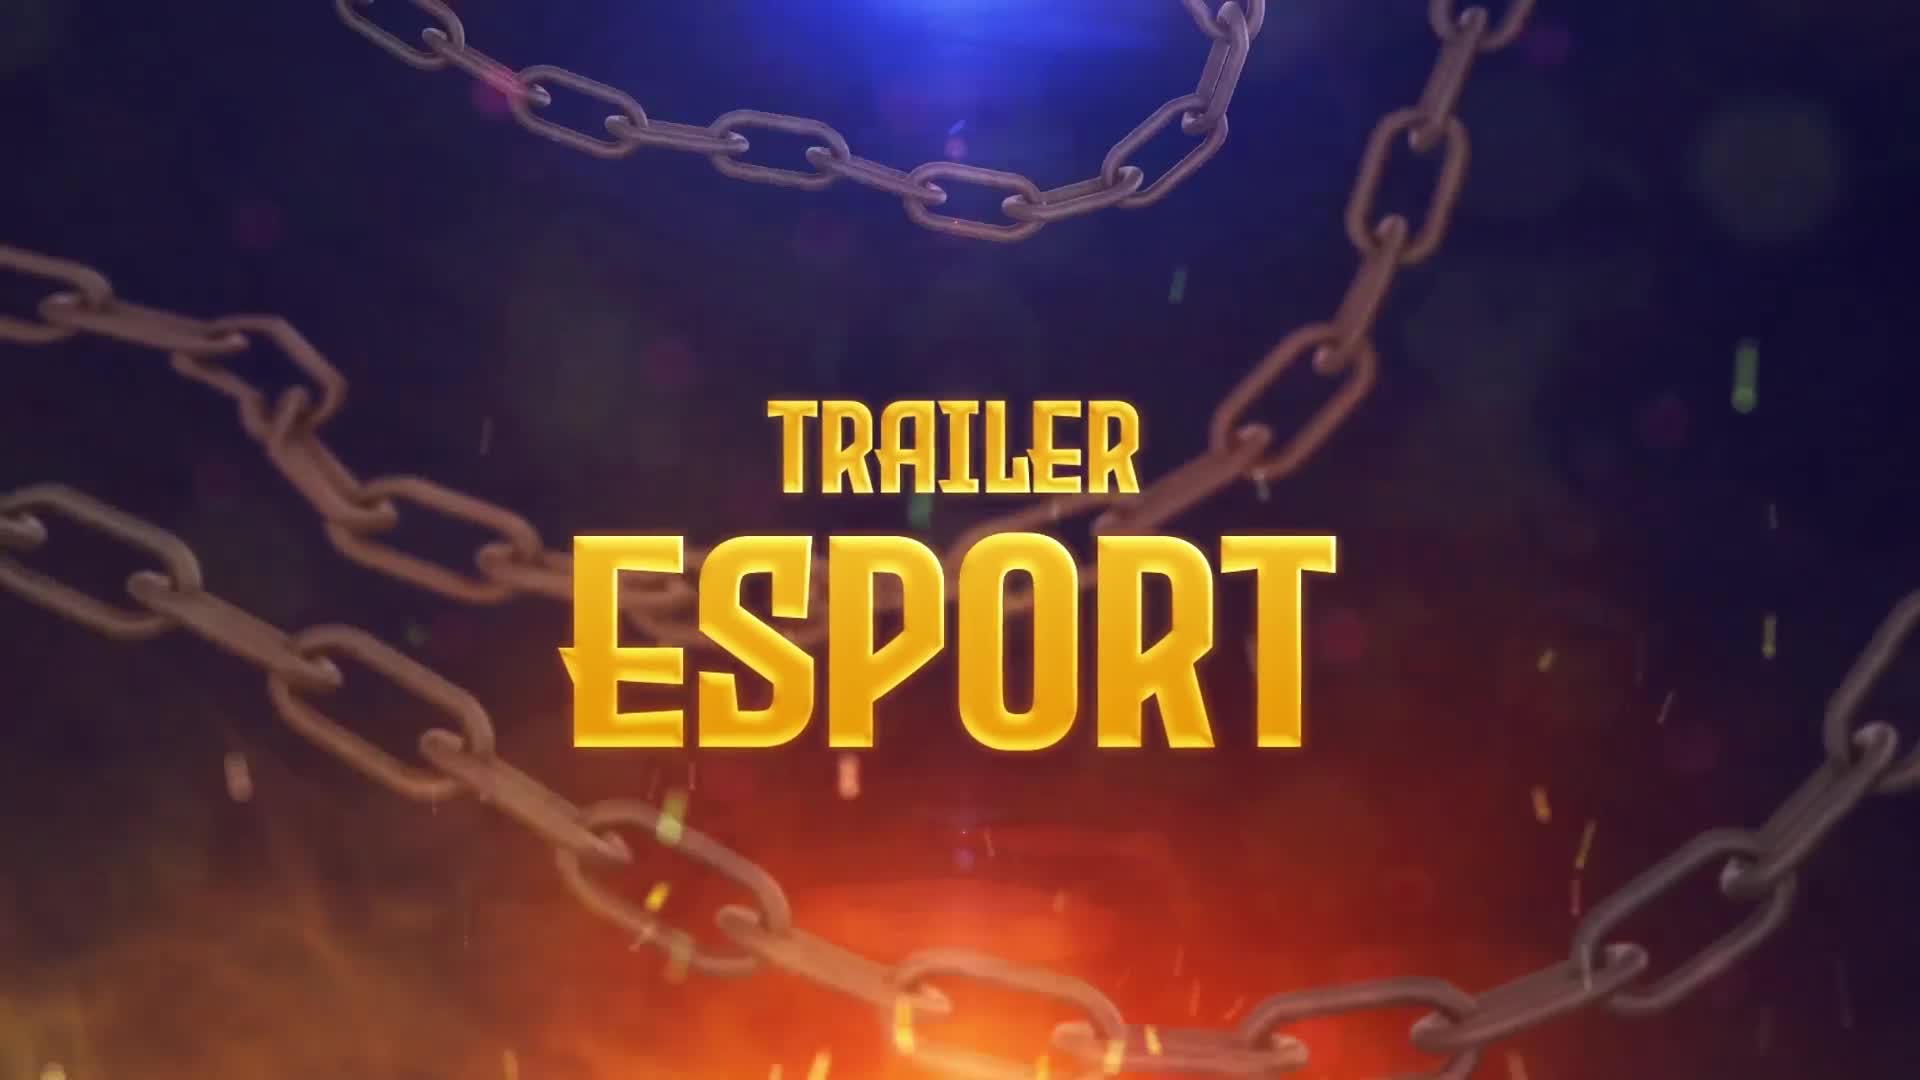 eSports Trailer Videohive 30310269 Premiere Pro Image 1